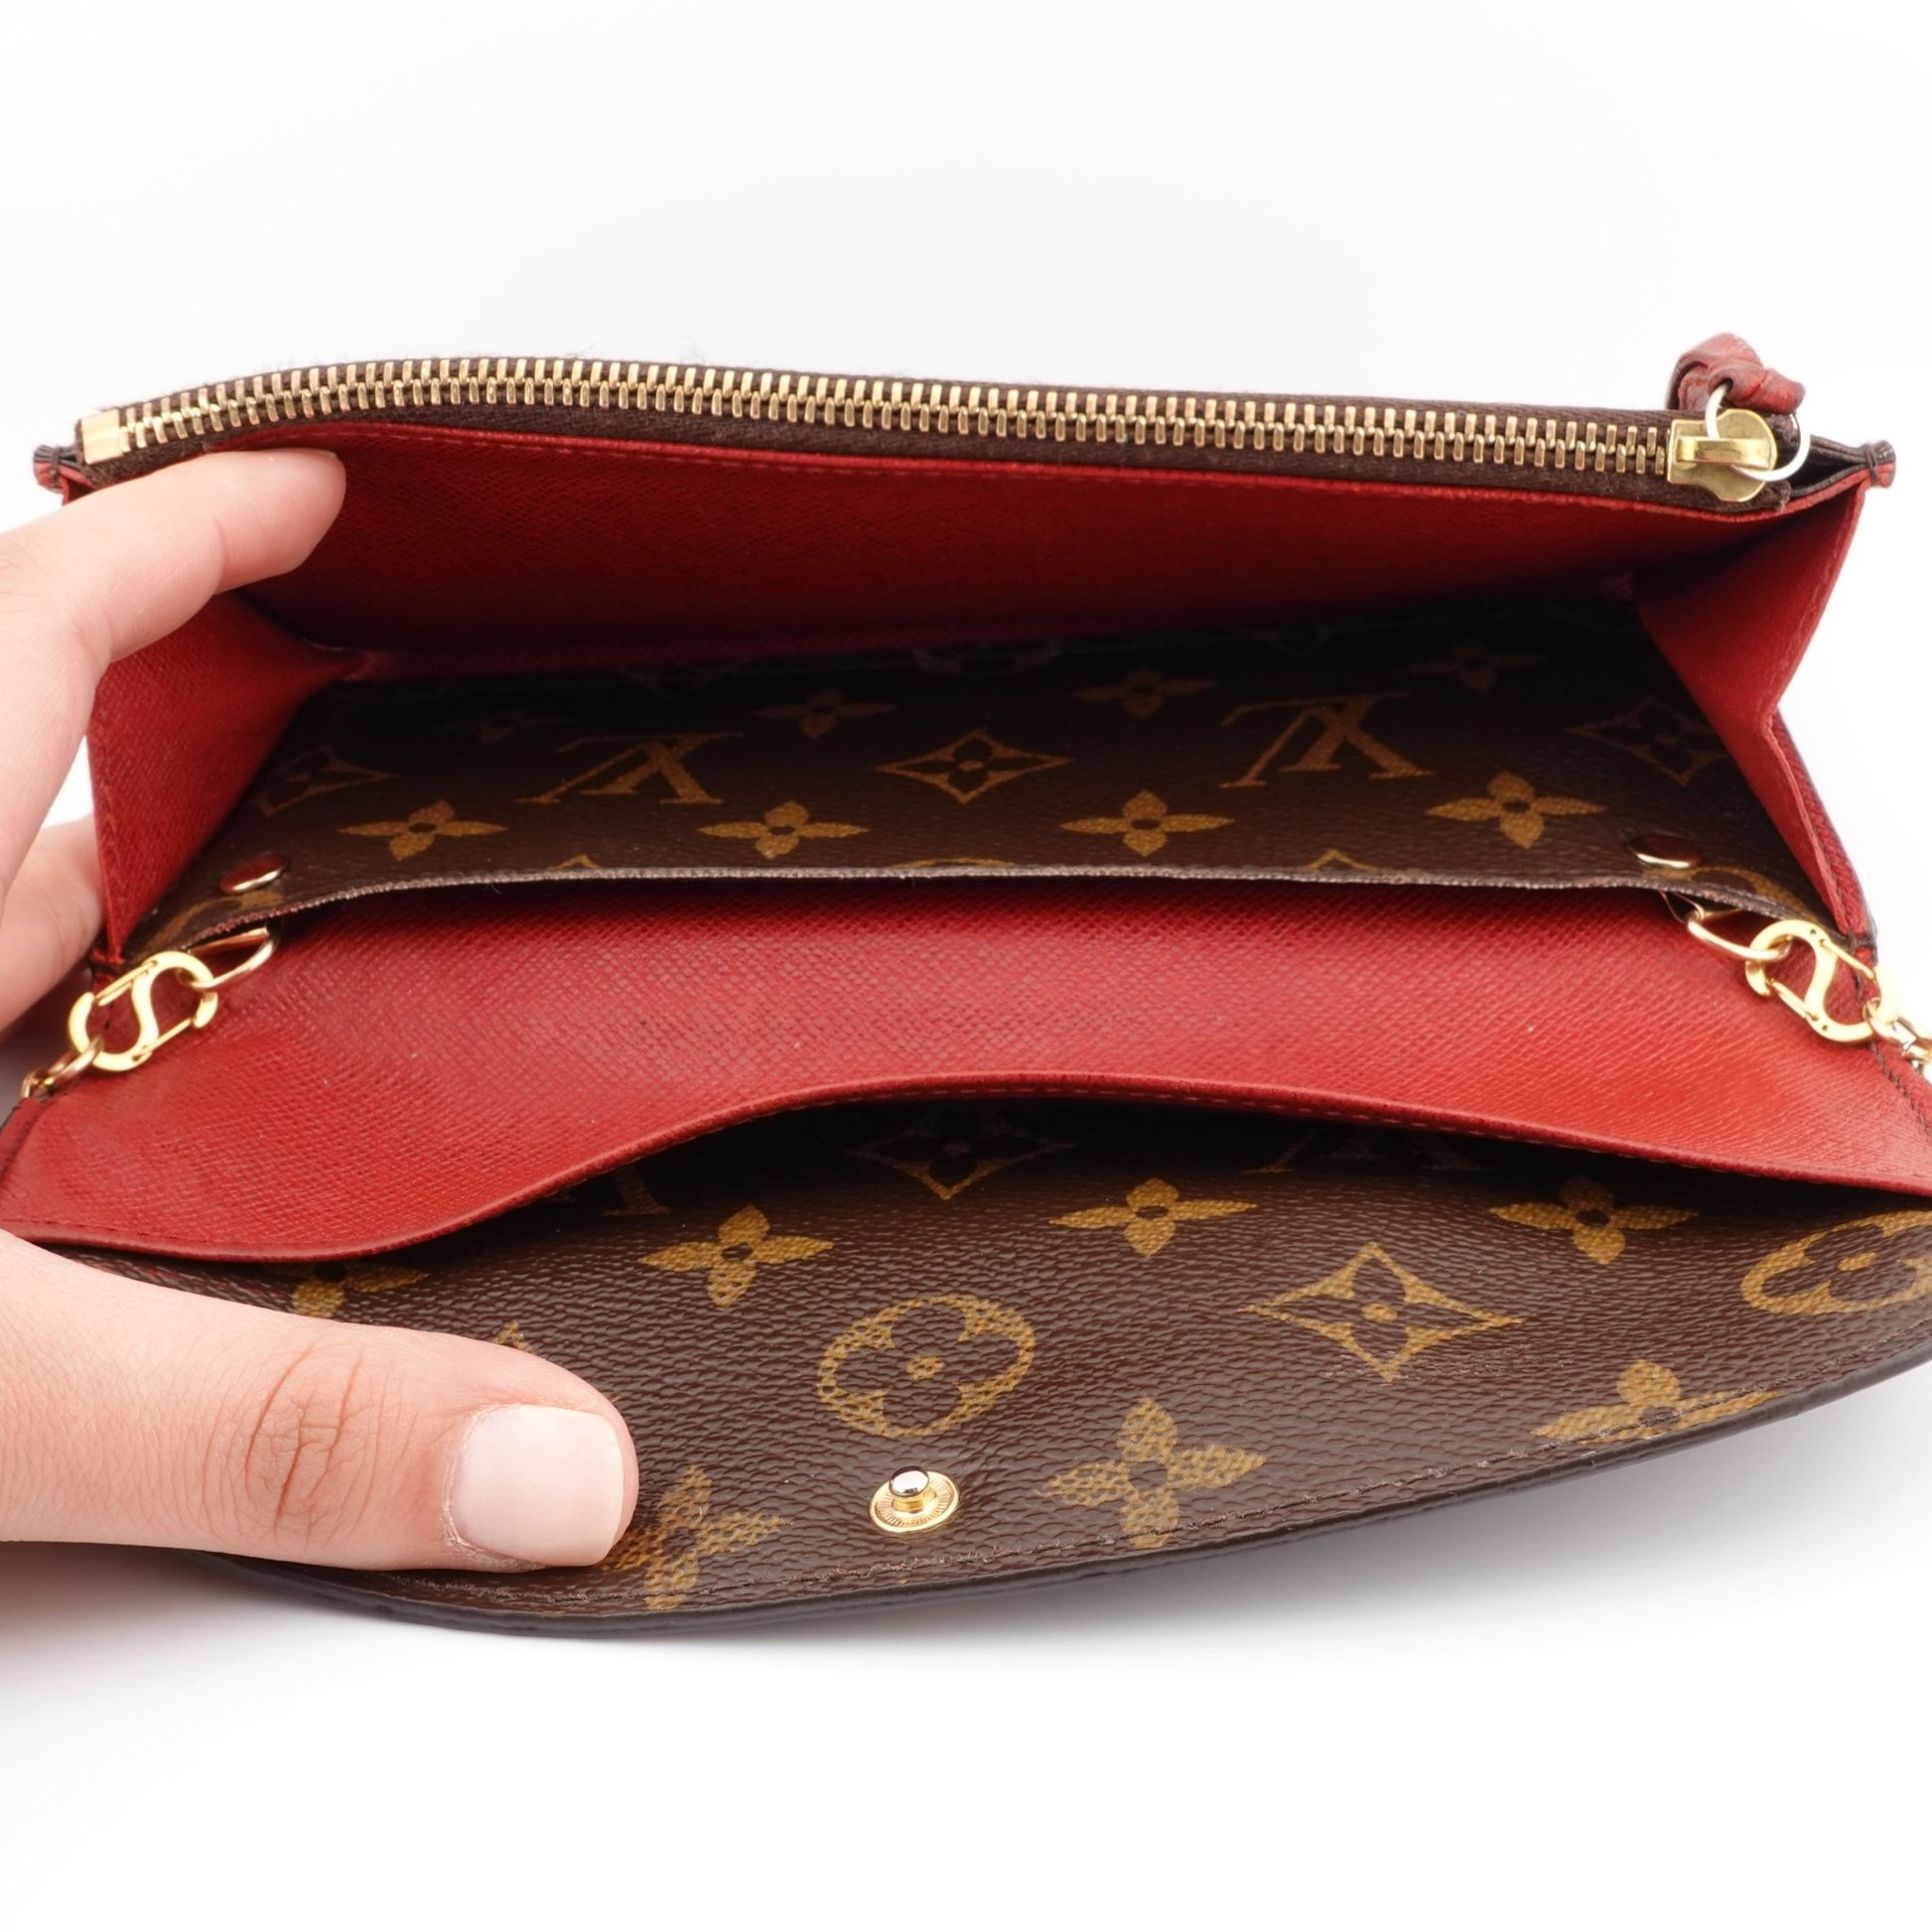 LOUIS VUITTON Red Monogram Emilie Wallet on Chain - Bag Envy